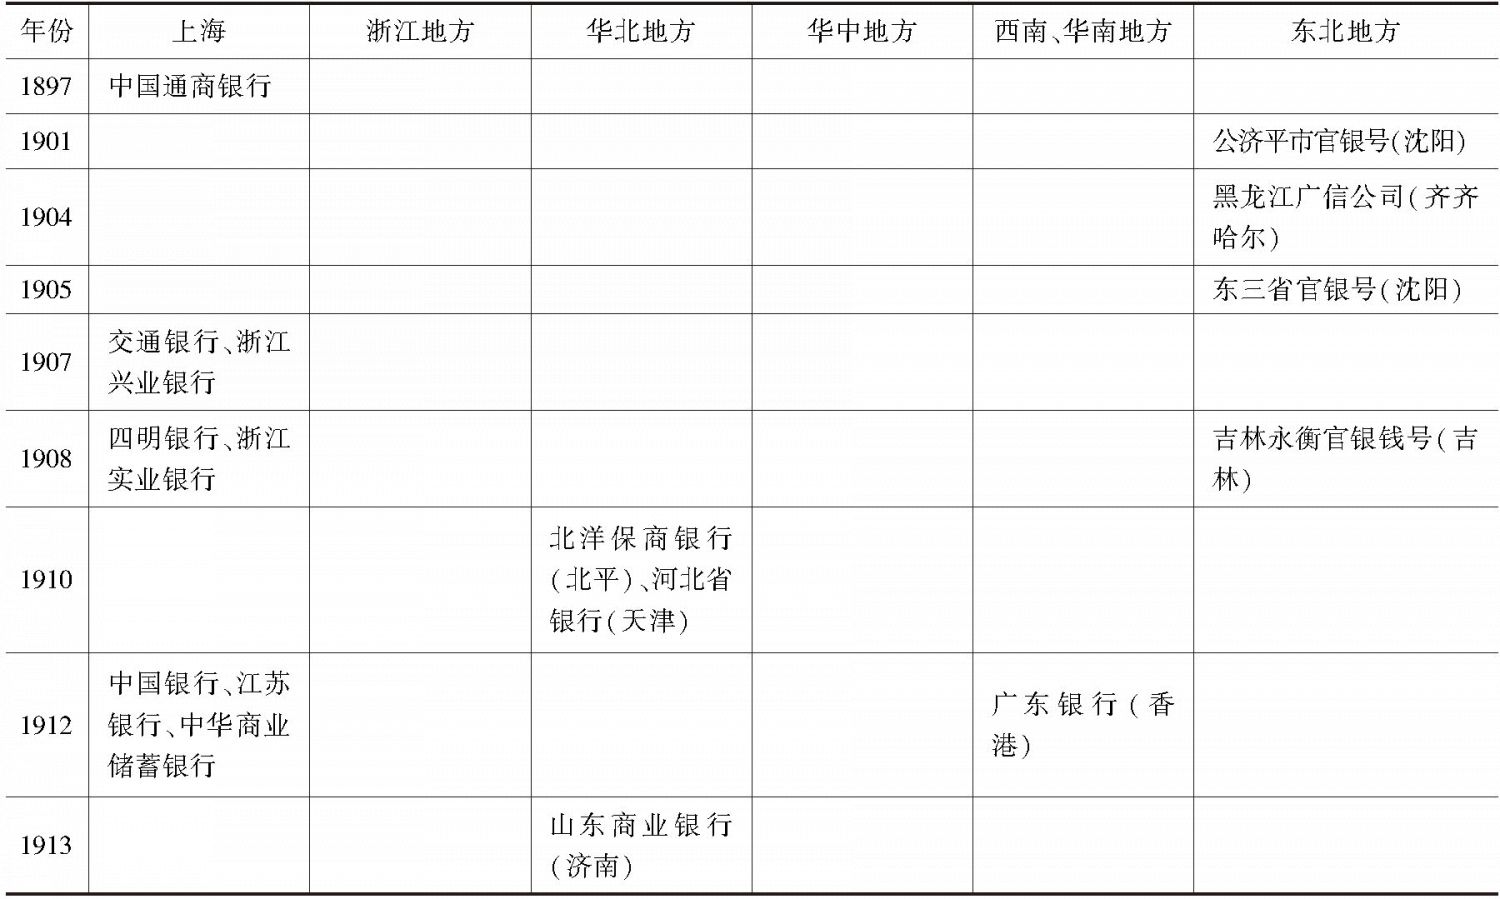 表1-2 中国新设银行一览（民族资本部分，1897～1929）